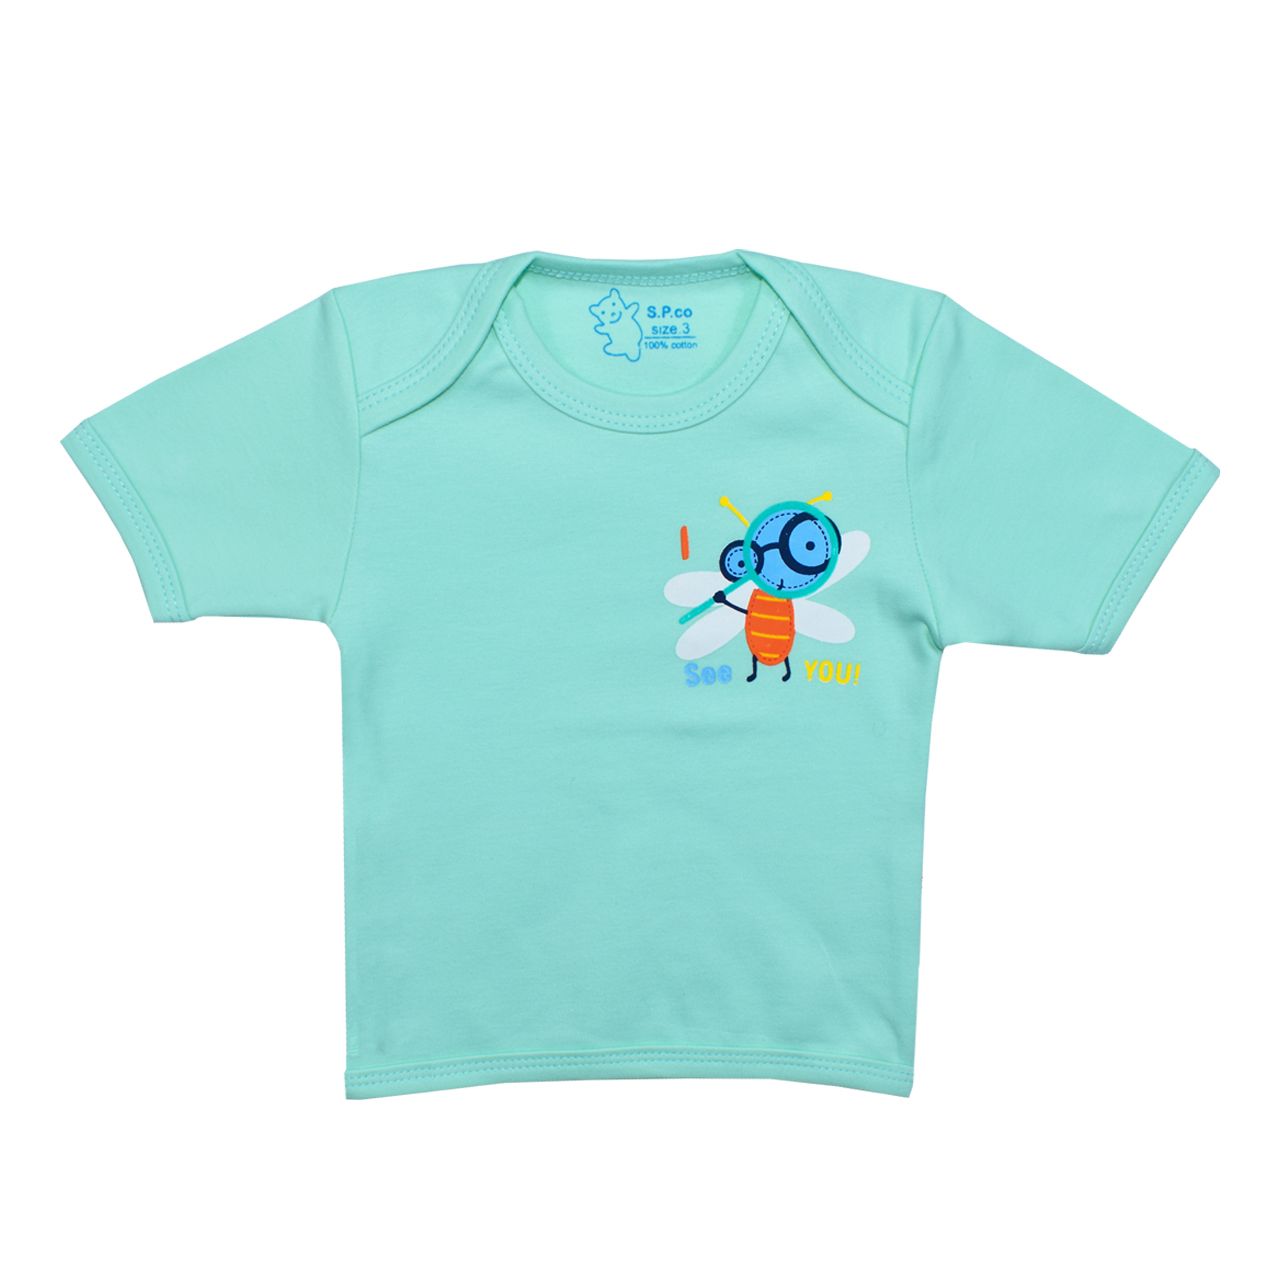 تی شرت آستین کوتاه نوزادی اسپیکو کد 301 -4 بسته دو عددی -  - 5